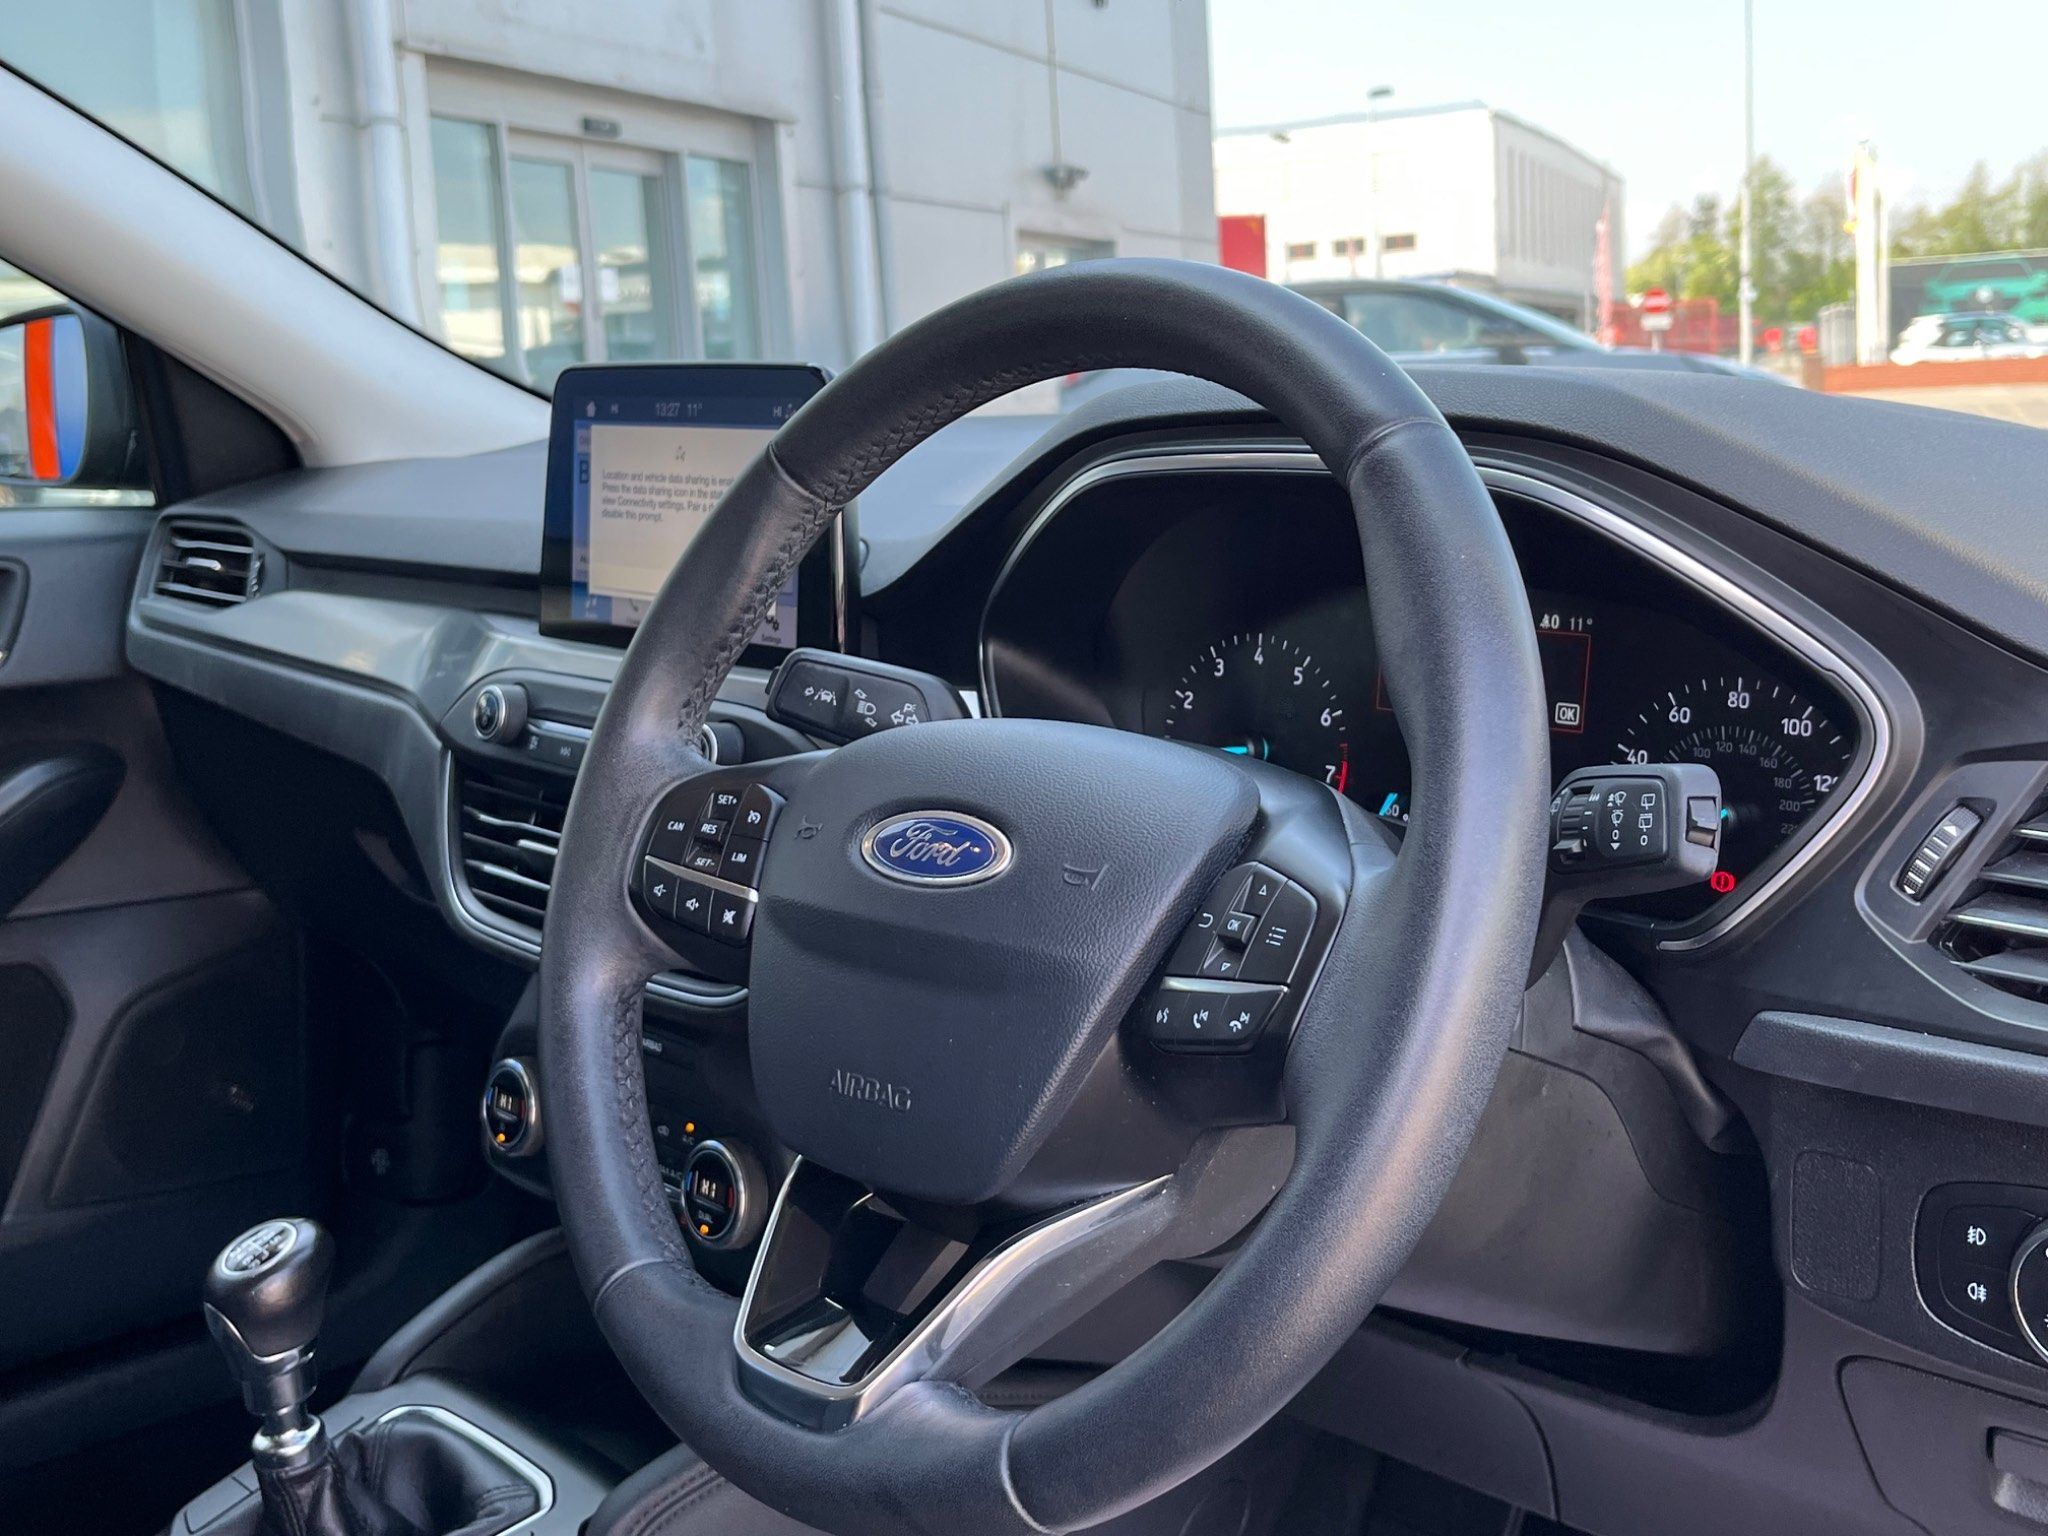 2019 Ford Focus EcoBoost Titanium Euro 6 full